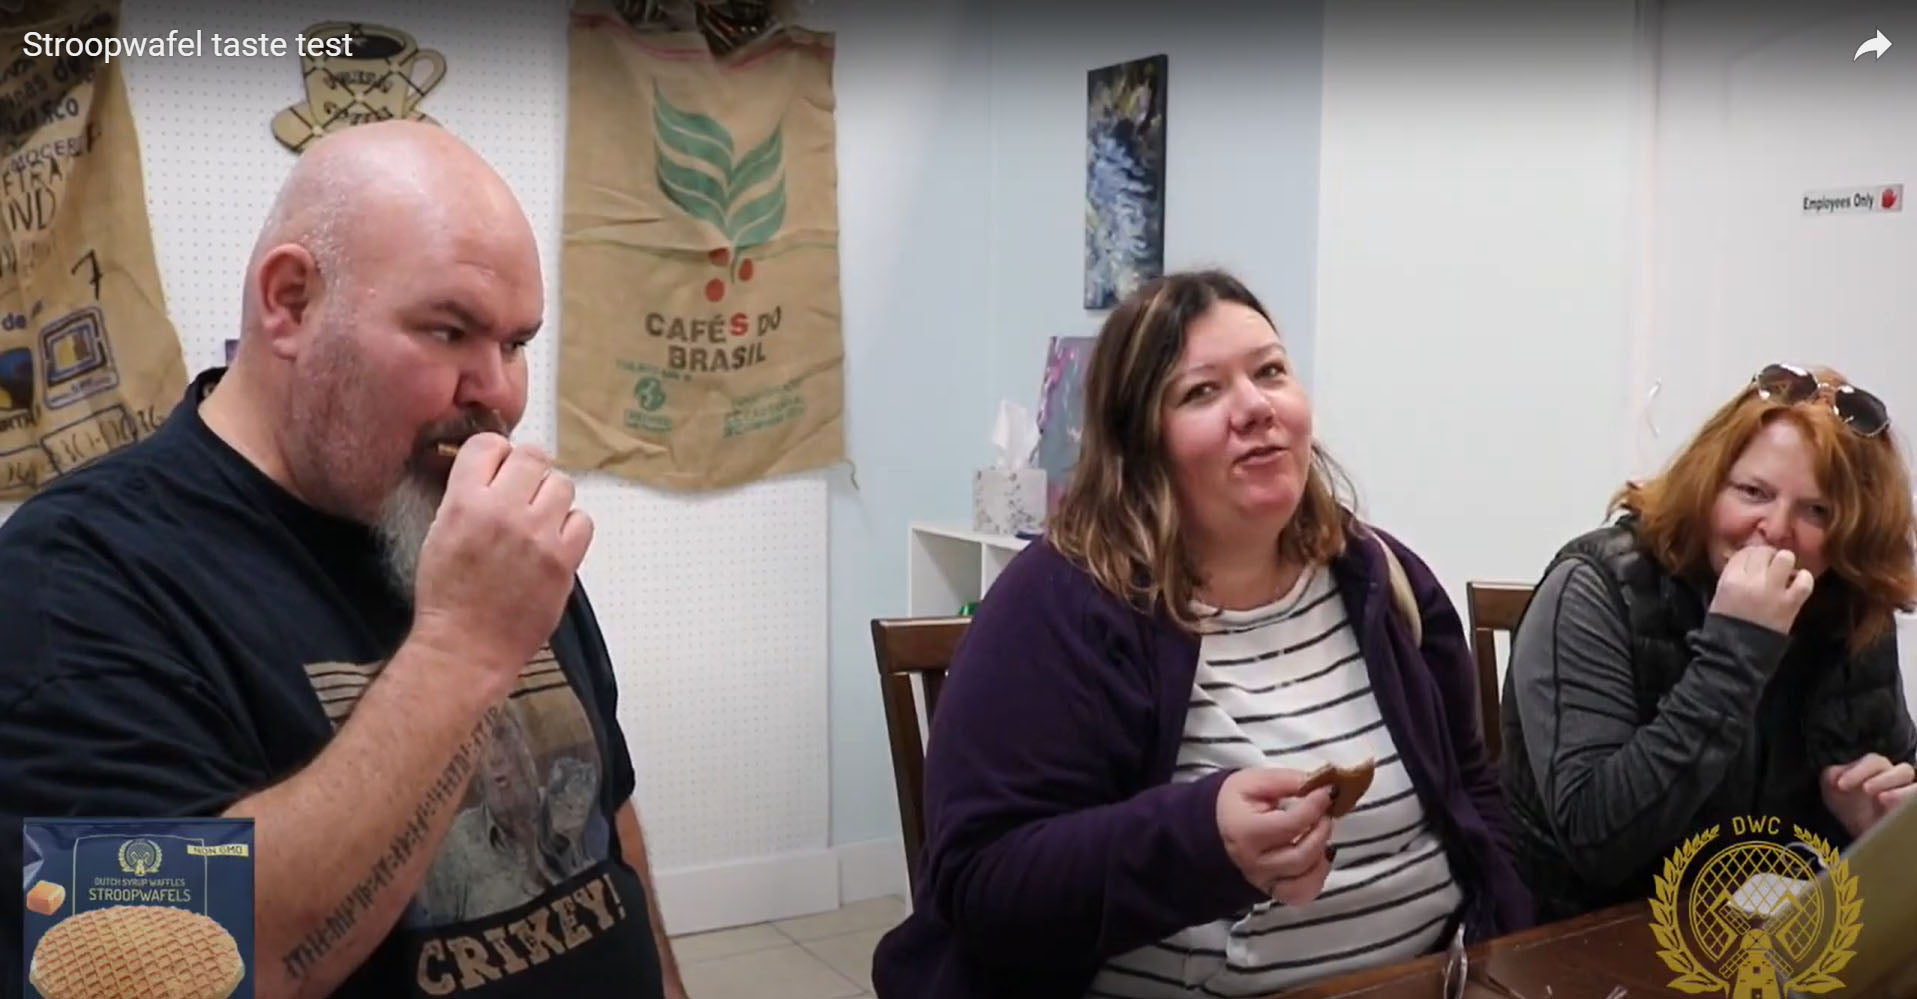 Load video: Taste testing a Stroopwafel